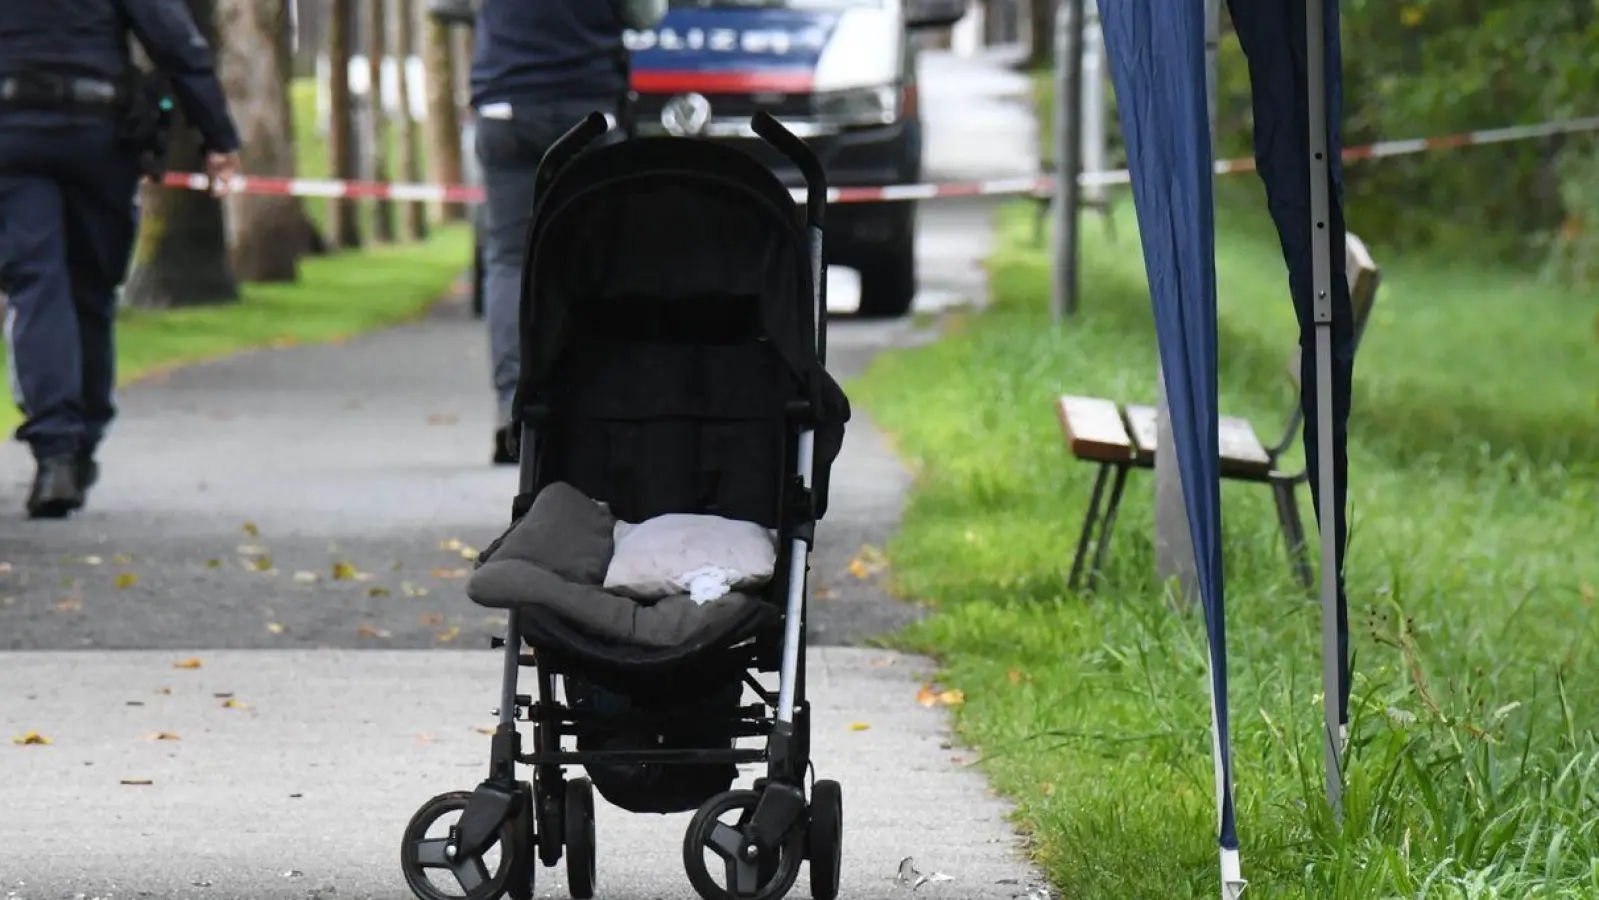 Polizisten ermitteln an einem Abgesperrten Bereich eines Gehwegs, auf dem eine Kinderkarre steht. Sechs Monate nach dem Ertrinkungstod eines Sechsjährigen in Österreich steht sein Vater unter dringendem Mordverdacht. (Foto: Georg Köchler/Zoom Tirol/APA/dpa)